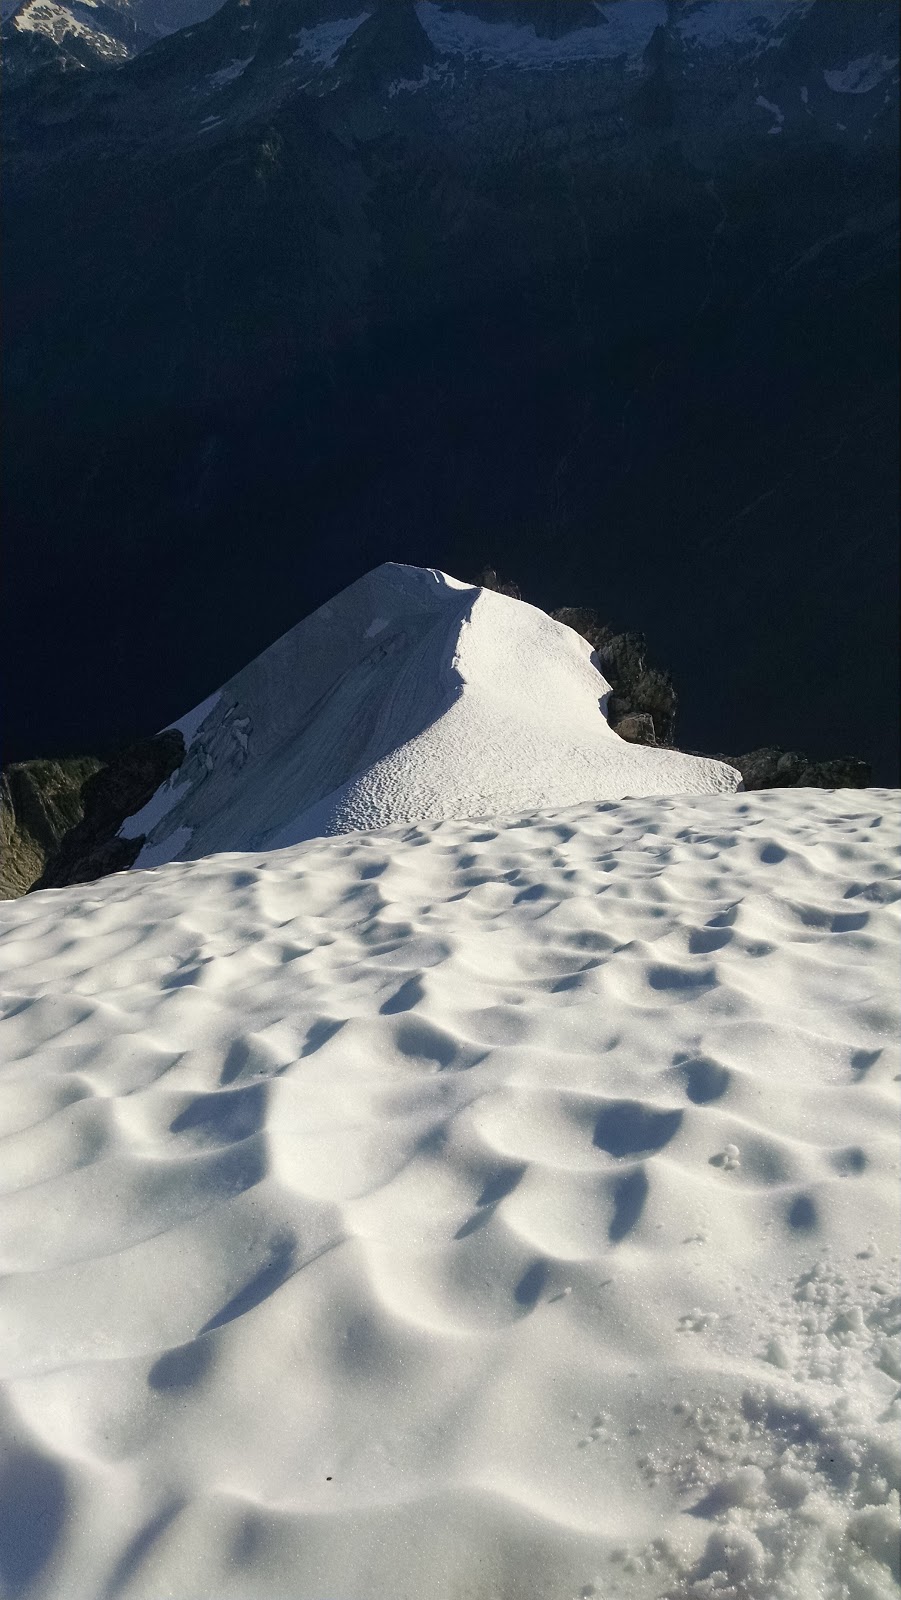 American Alpine Institute - Climbing Blog: August 2022